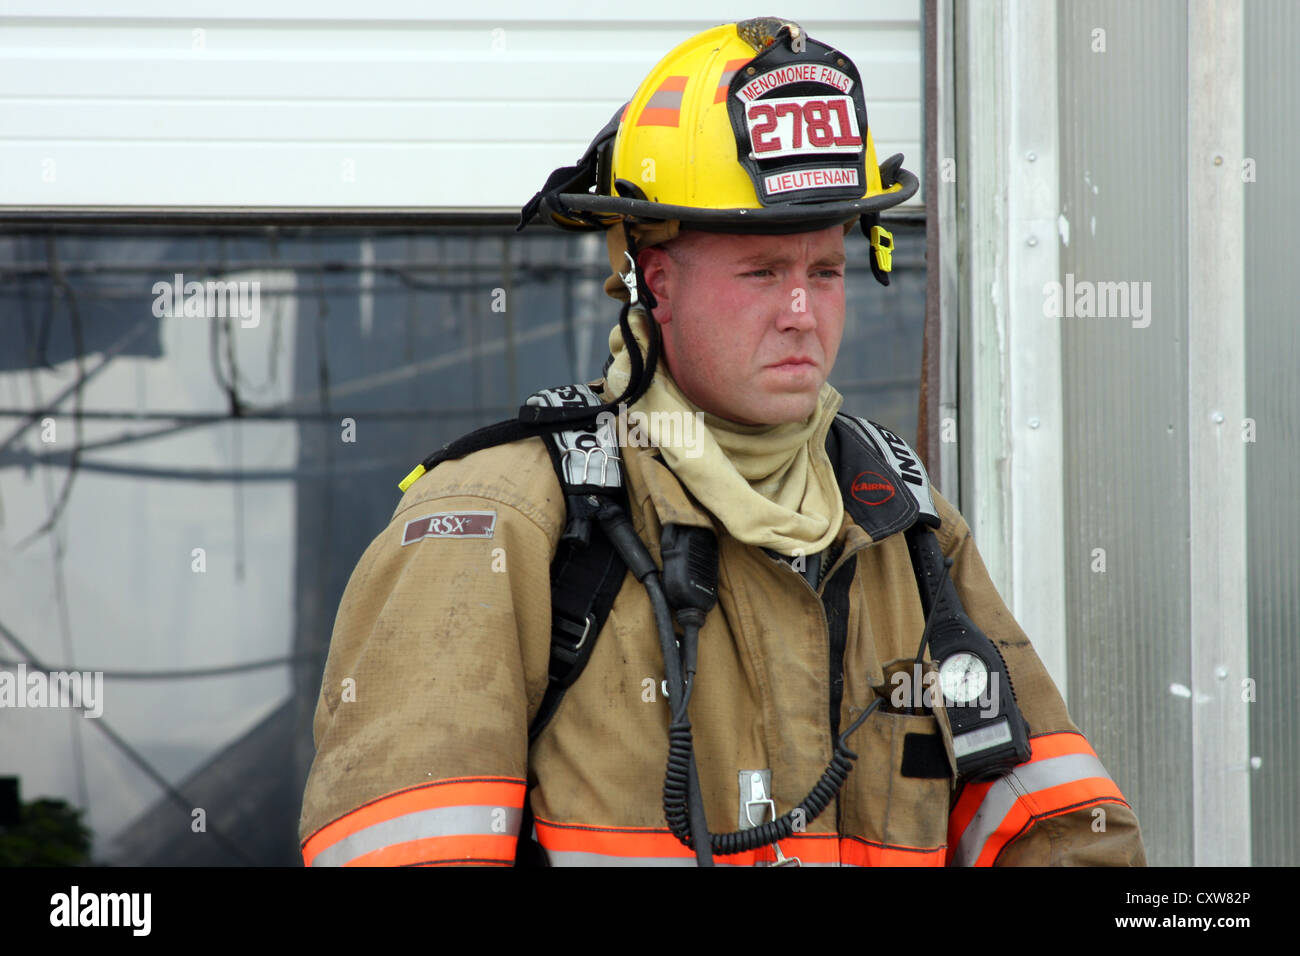 Un pompier sur les lieux d'un incendie à effet Banque D'Images